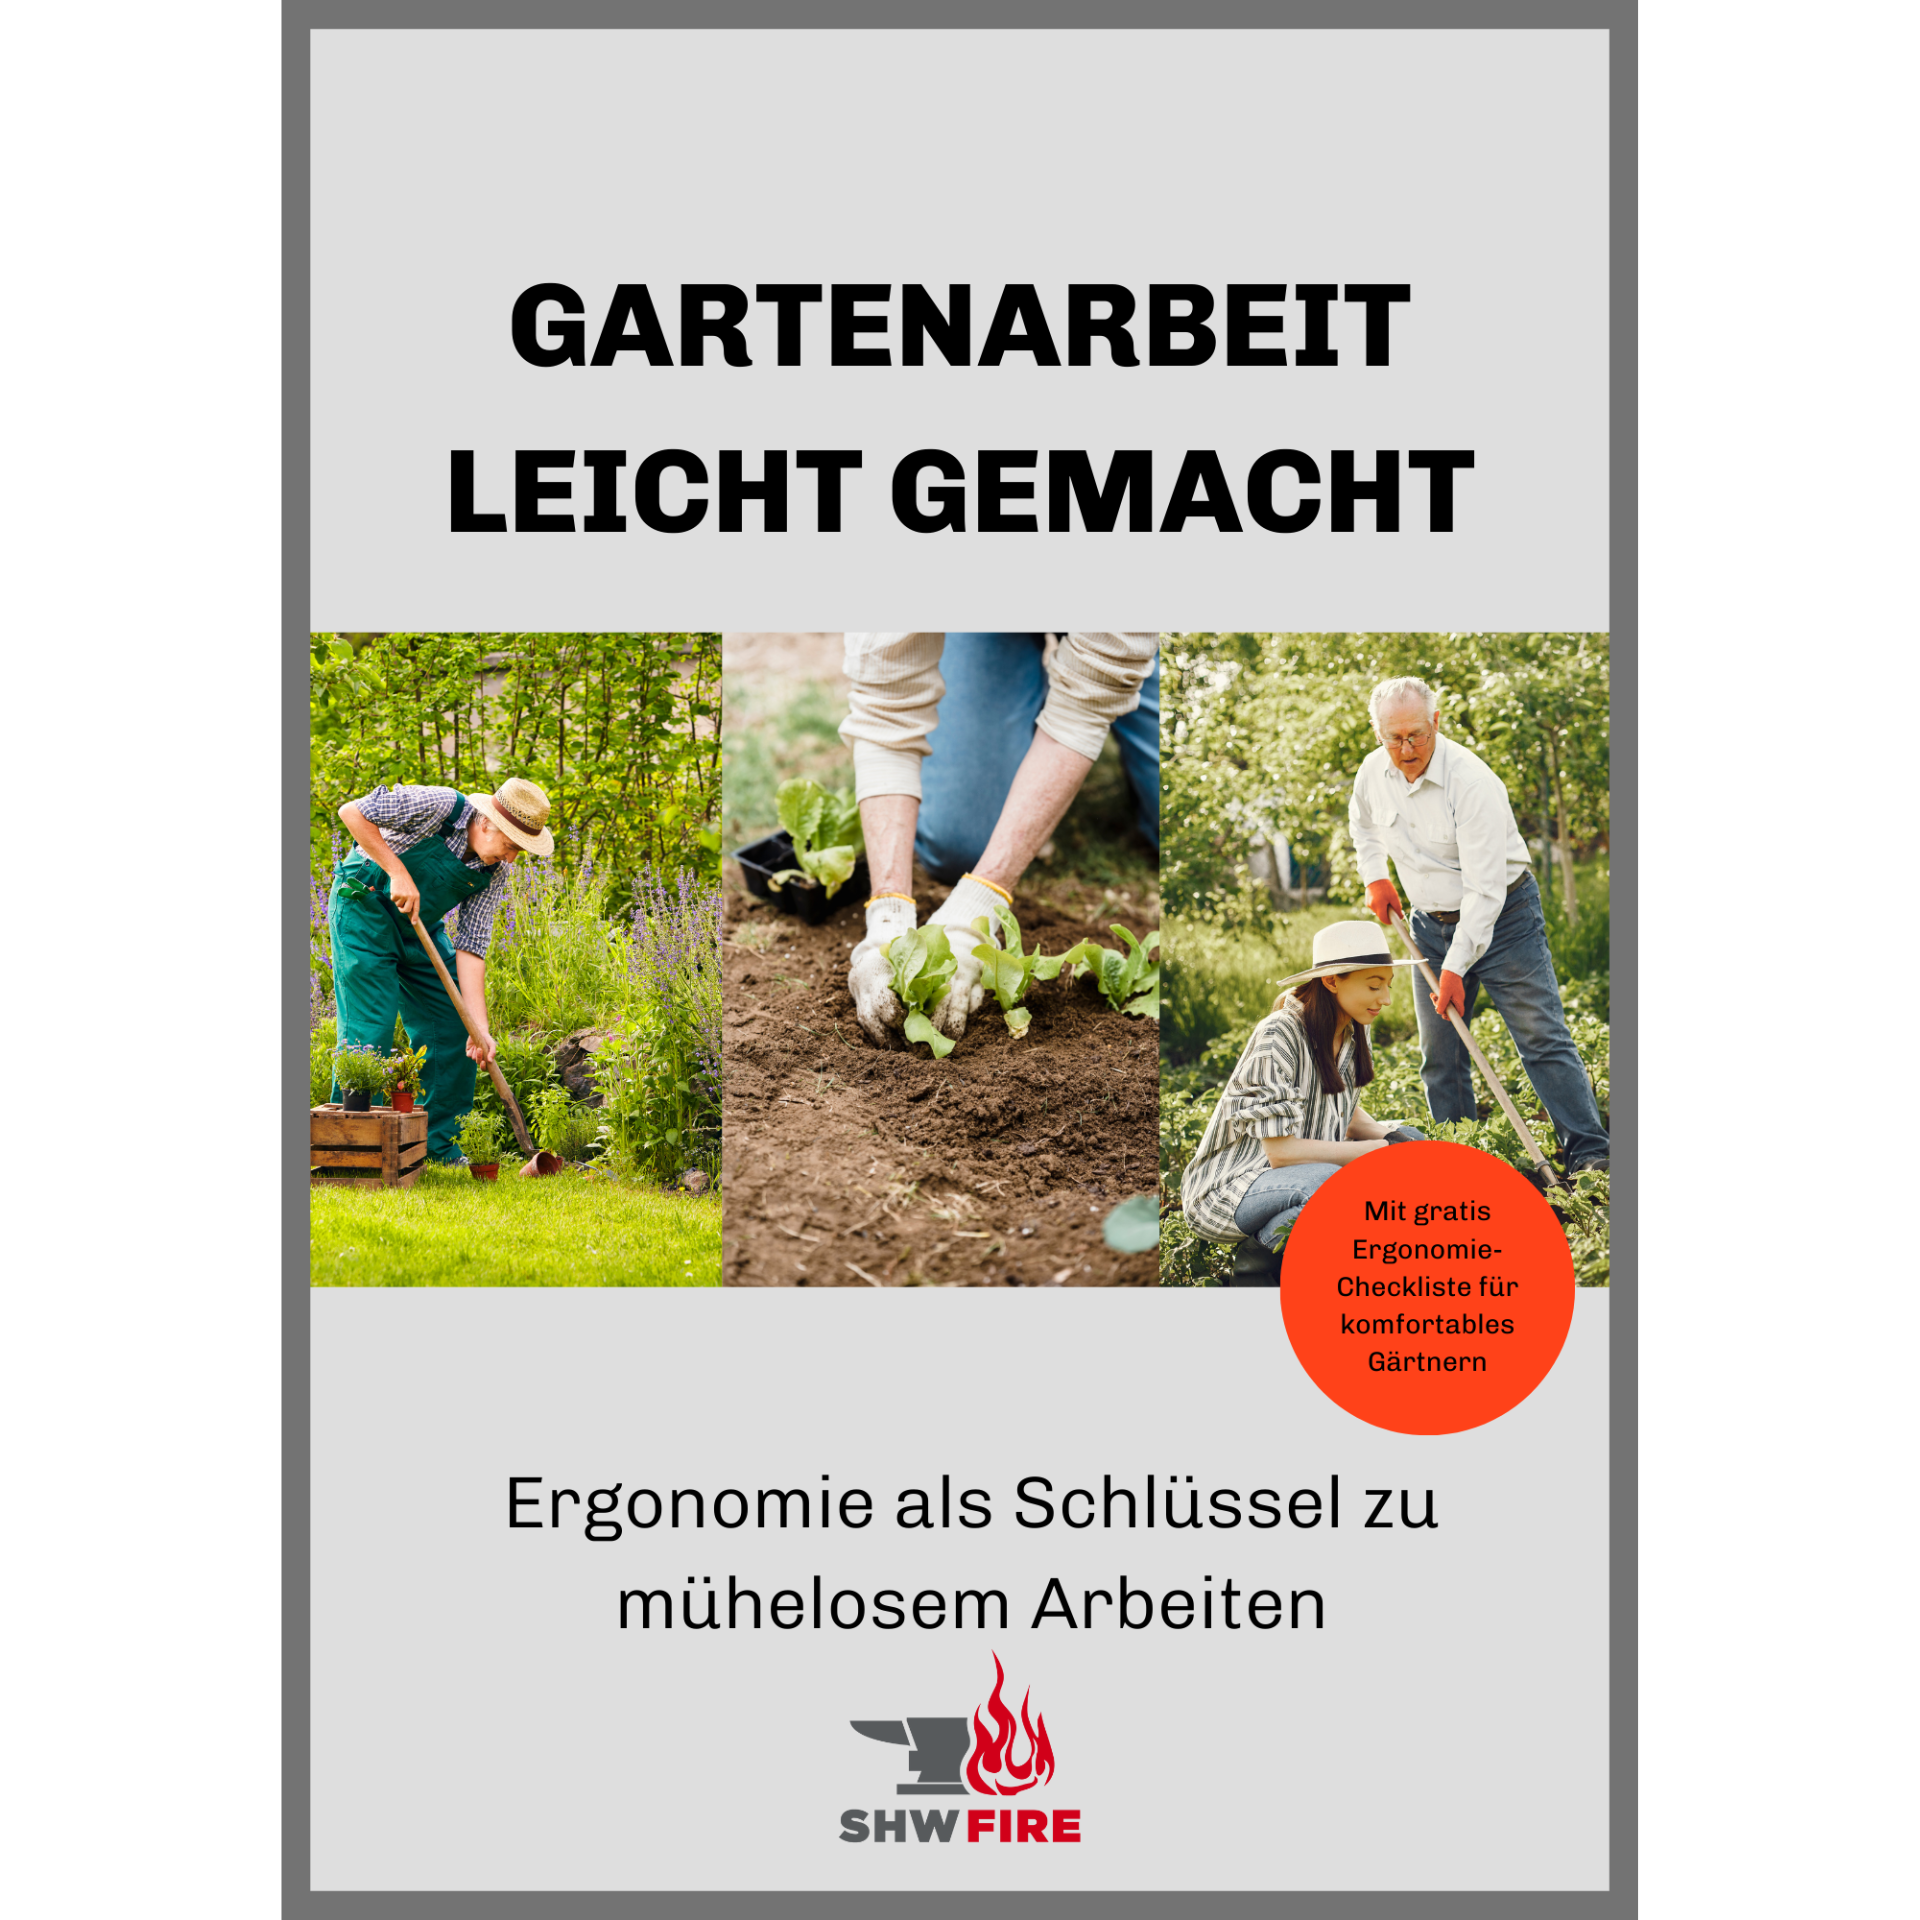 E-Book "Gartenarbeit leicht gemacht"